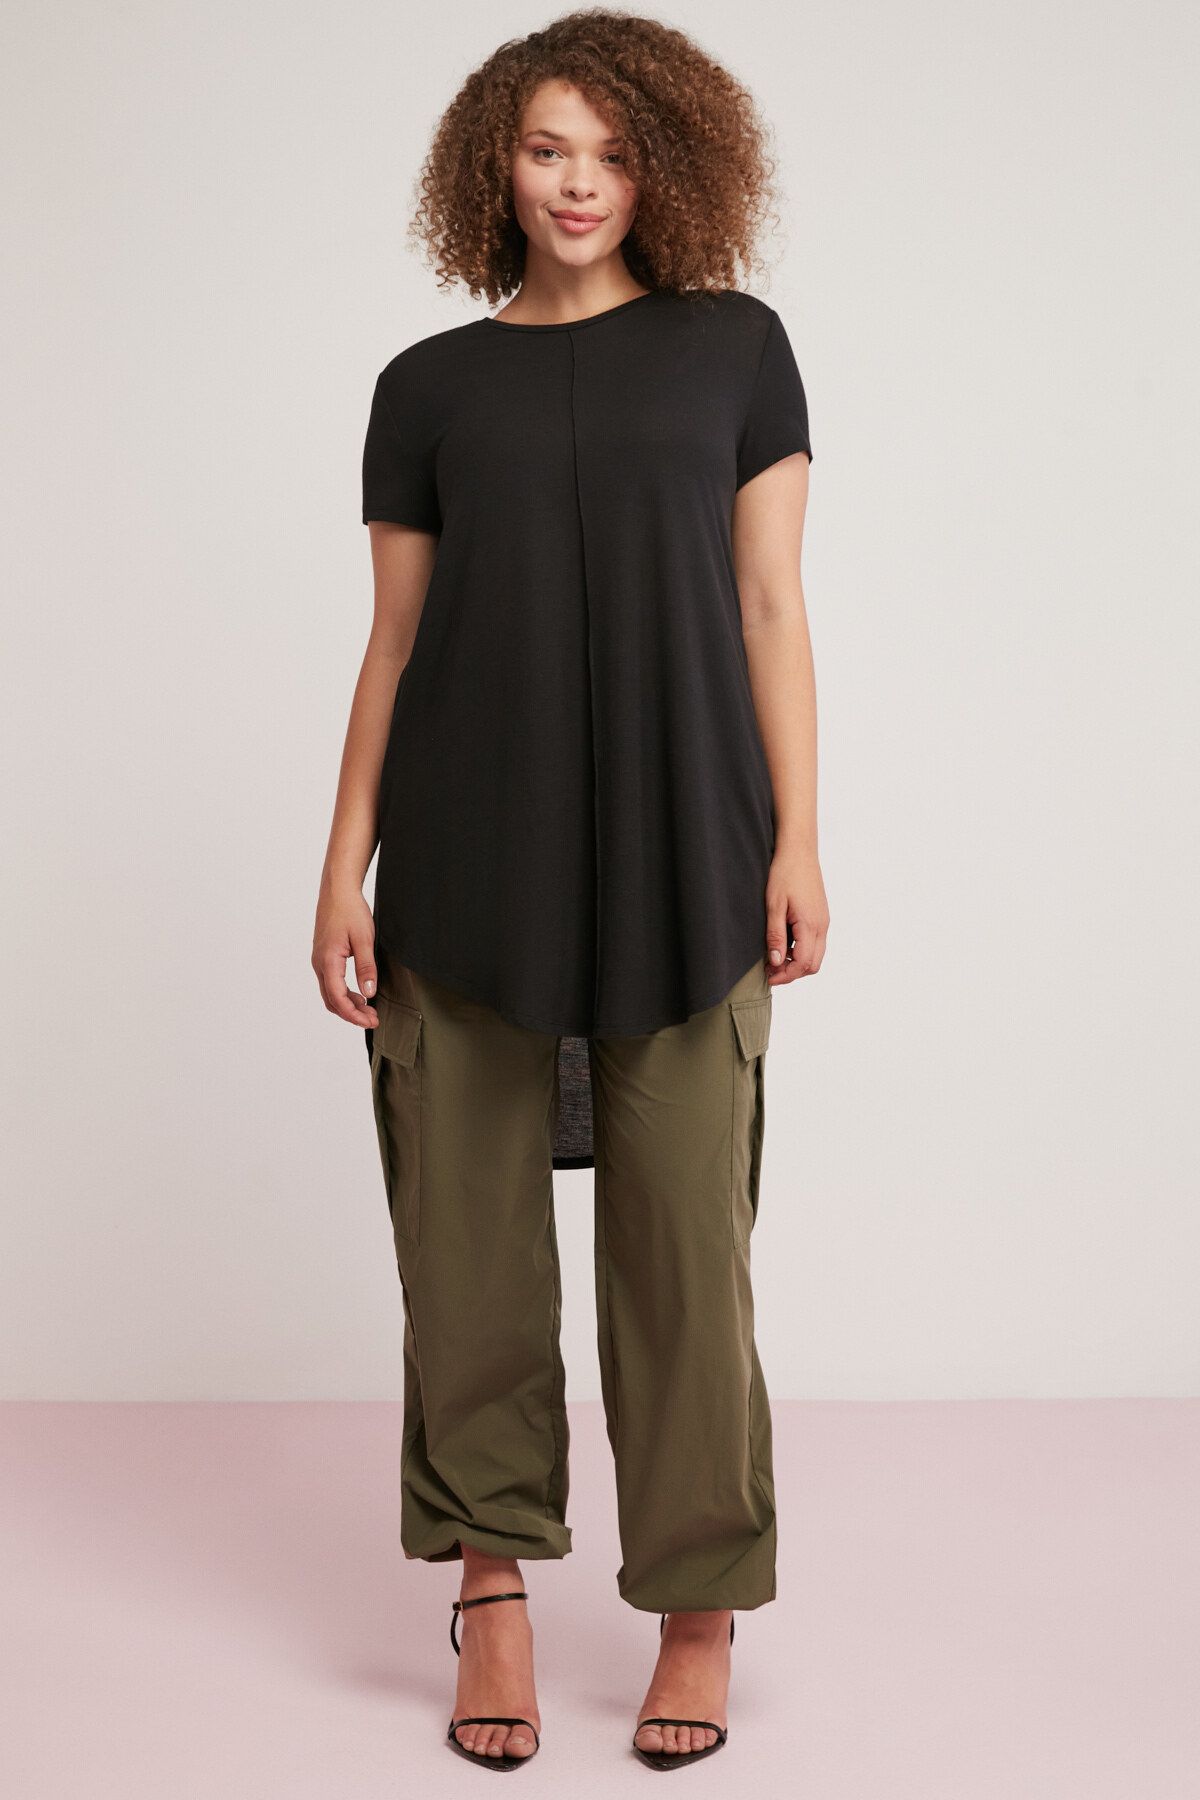 ETHIQUET Rachelle Kadın Asimetrik Kesim Viskon Karışımlı Dökümlü Siyah Büyük Beden T-shirt